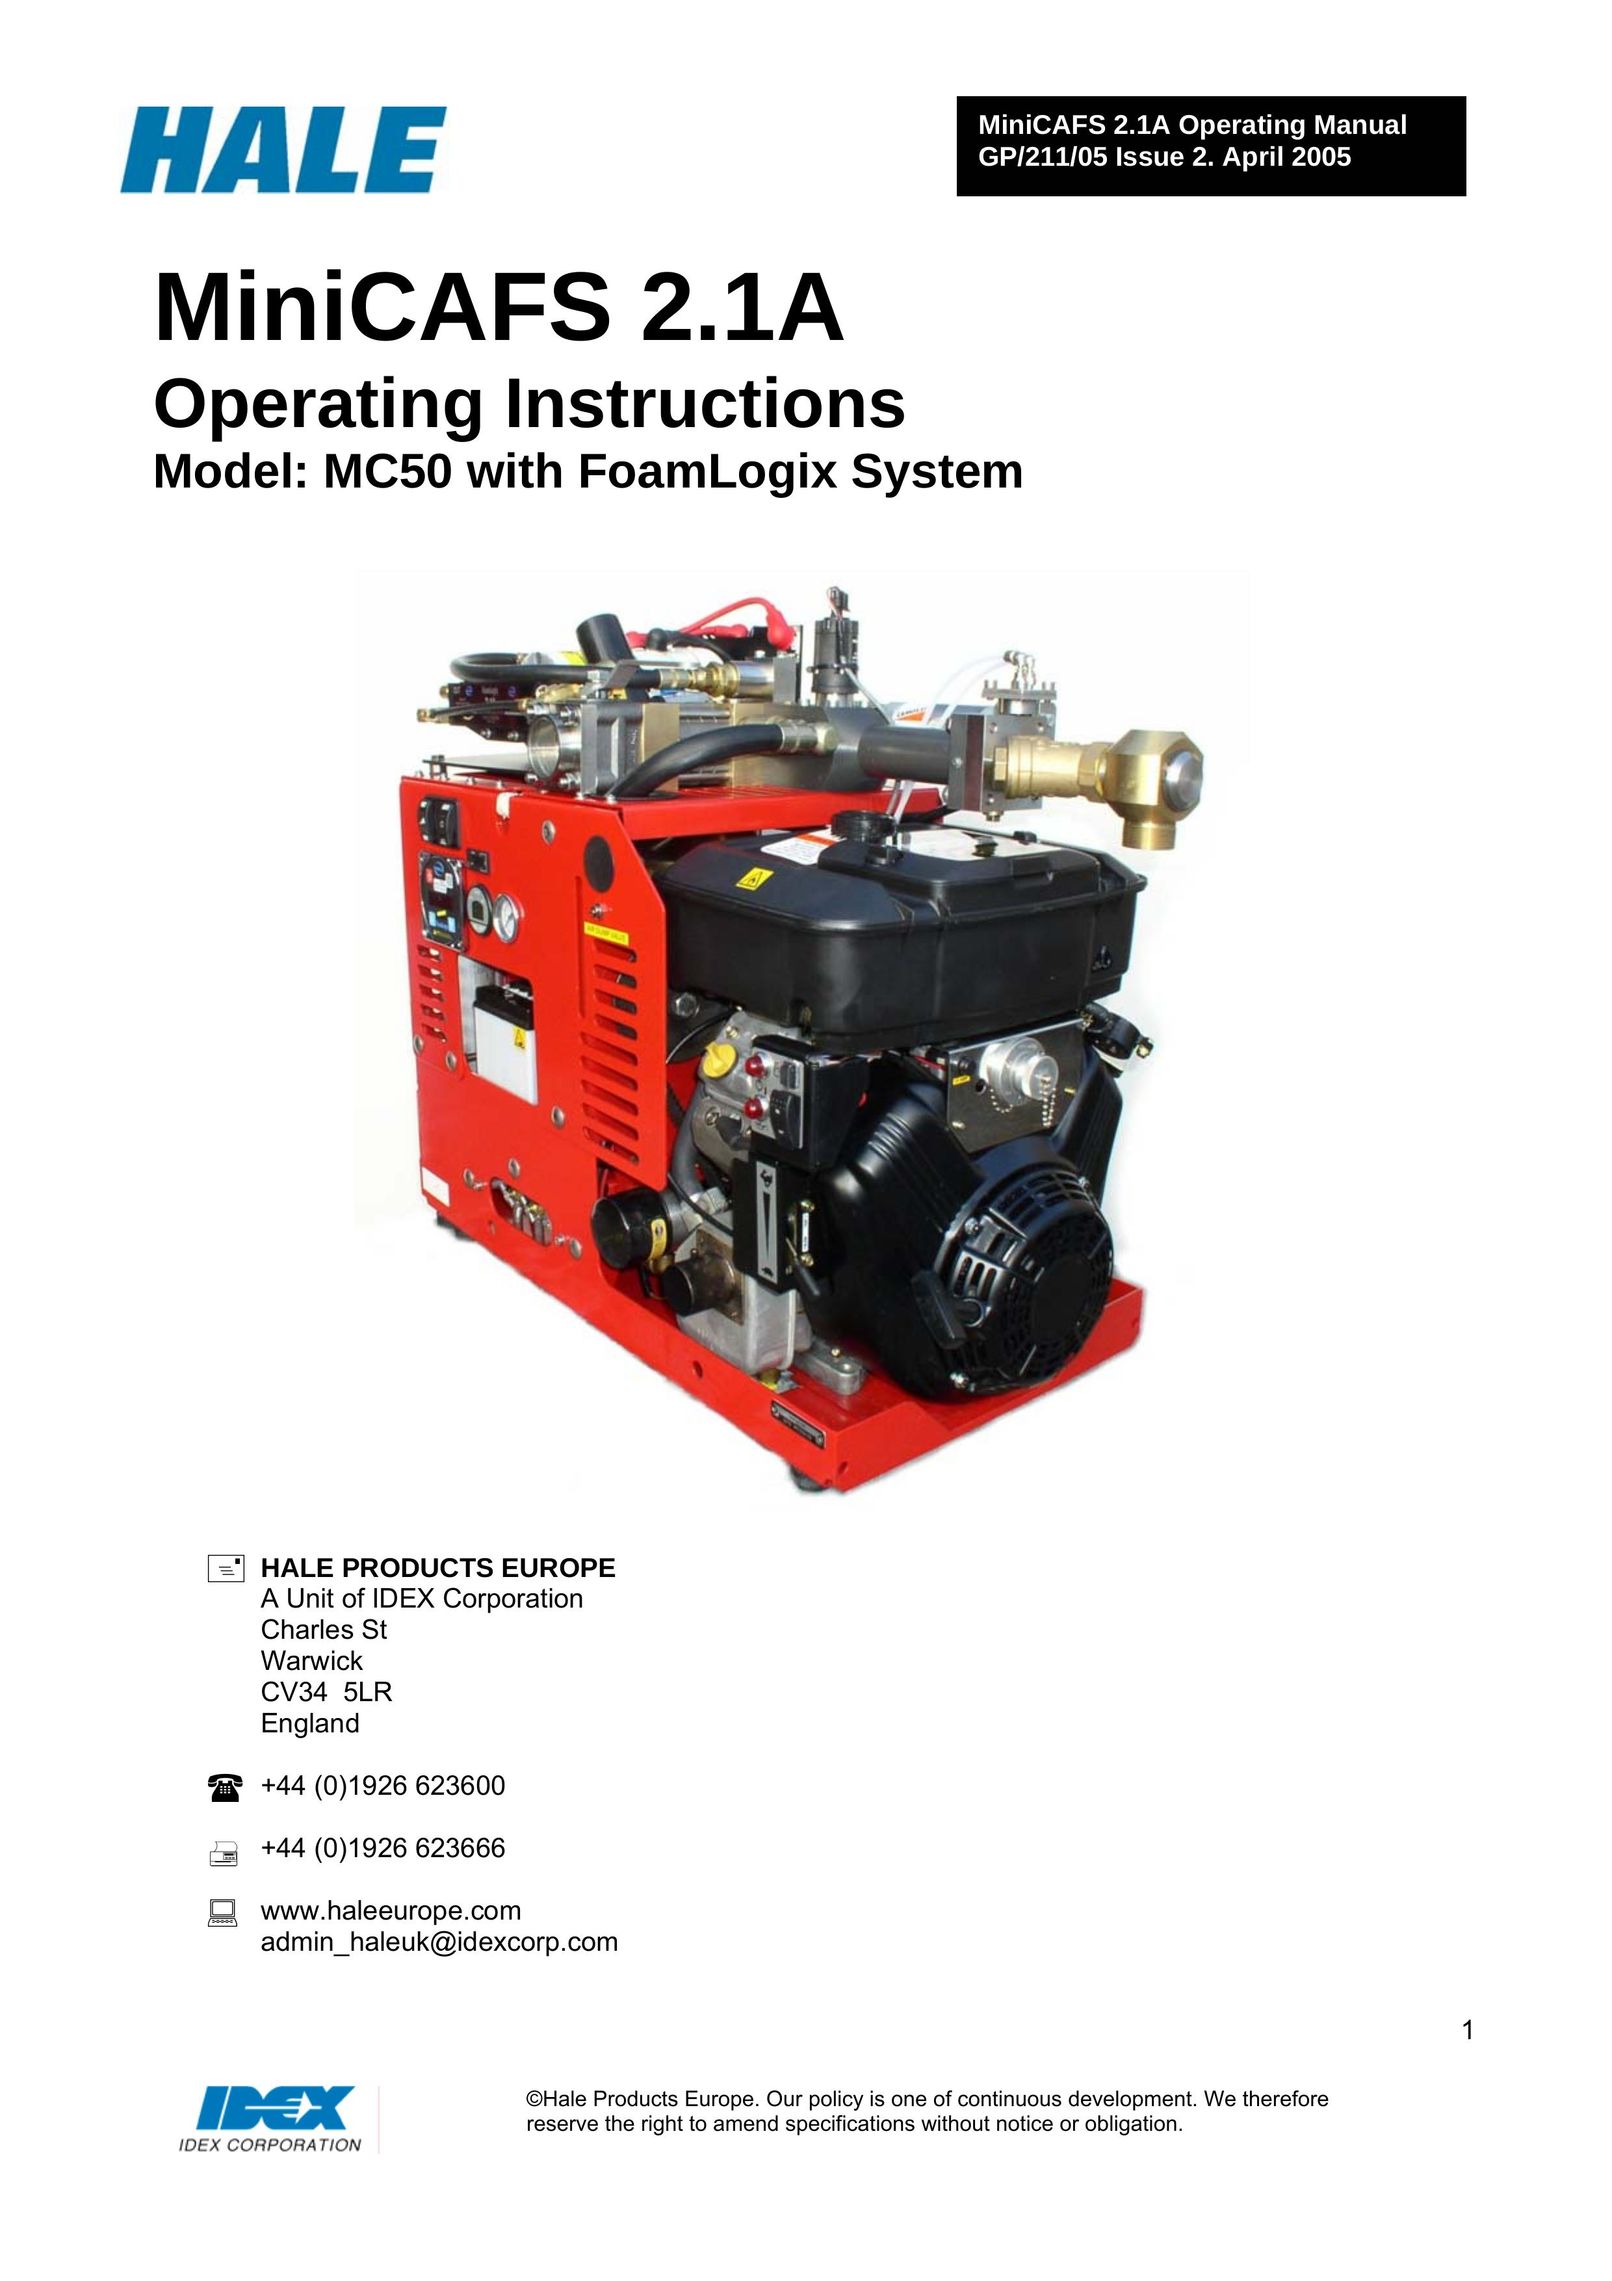 Briggs & Stratton MC50 Air Compressor User Manual